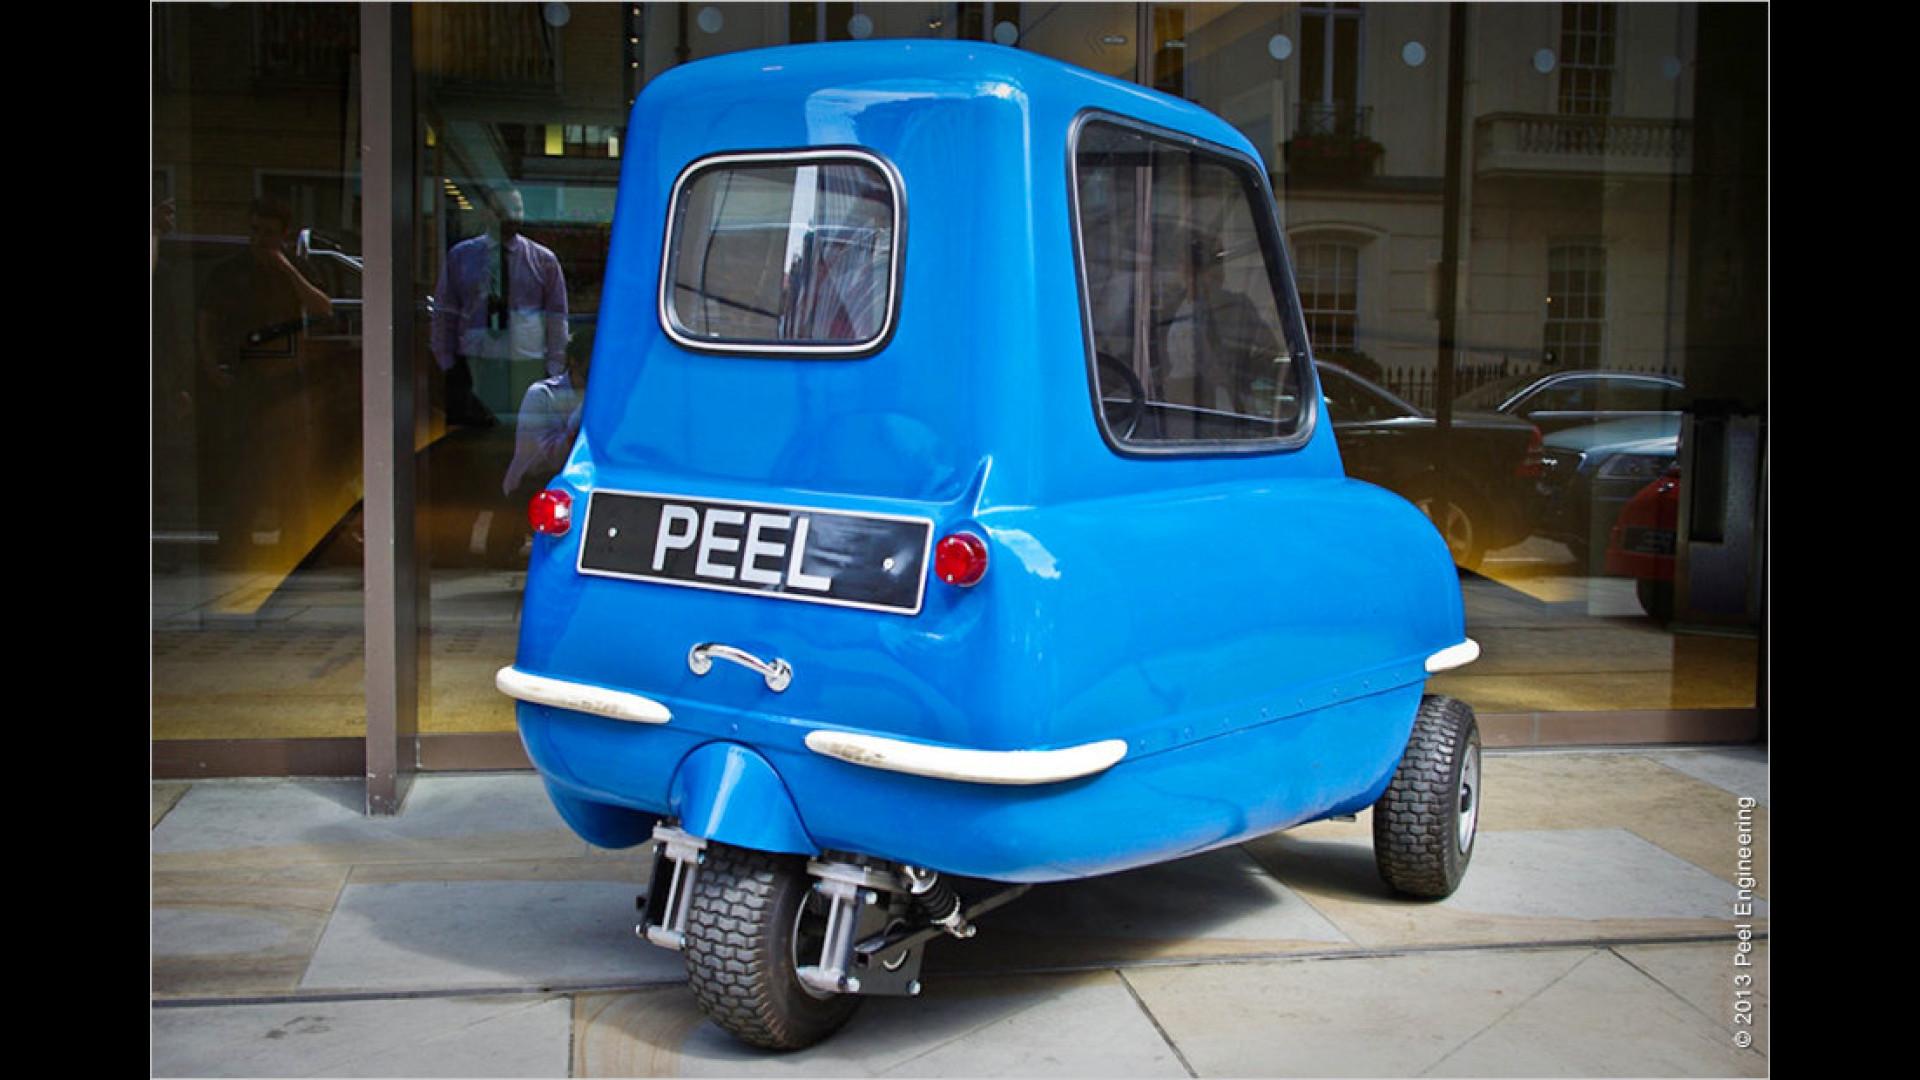 Пил пи 50. Машина Peel p50. Самый маленький автомобиль Peel p50. Трехколесный Peel p50. Peel p50 Trident.